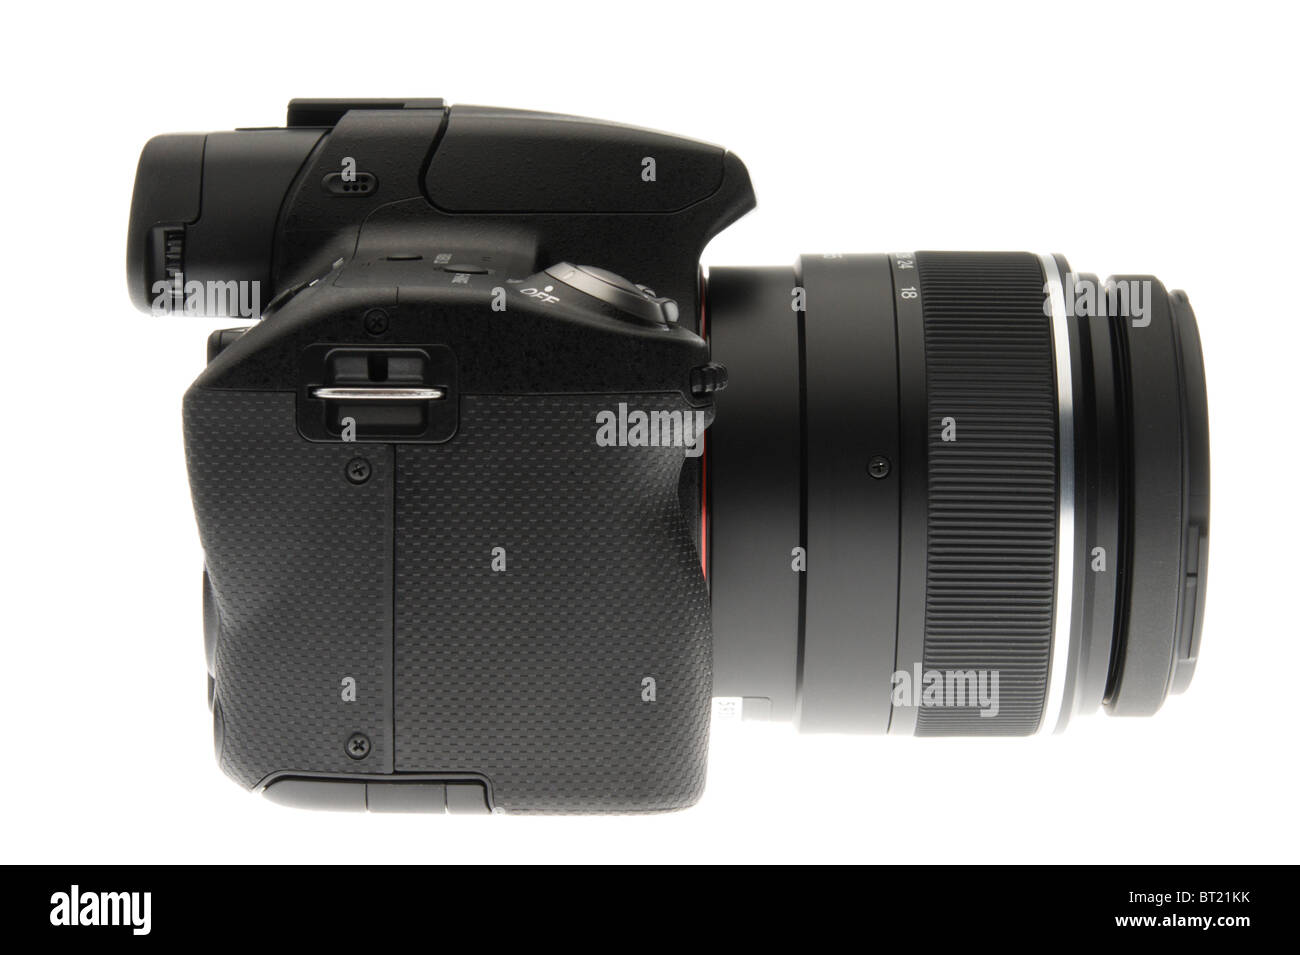 L'objectif unique numérique appareil photo Translucide' lancé Octobre 2010 - vue latérale avec toutes les marques utilisés comme élément anonyme Banque D'Images